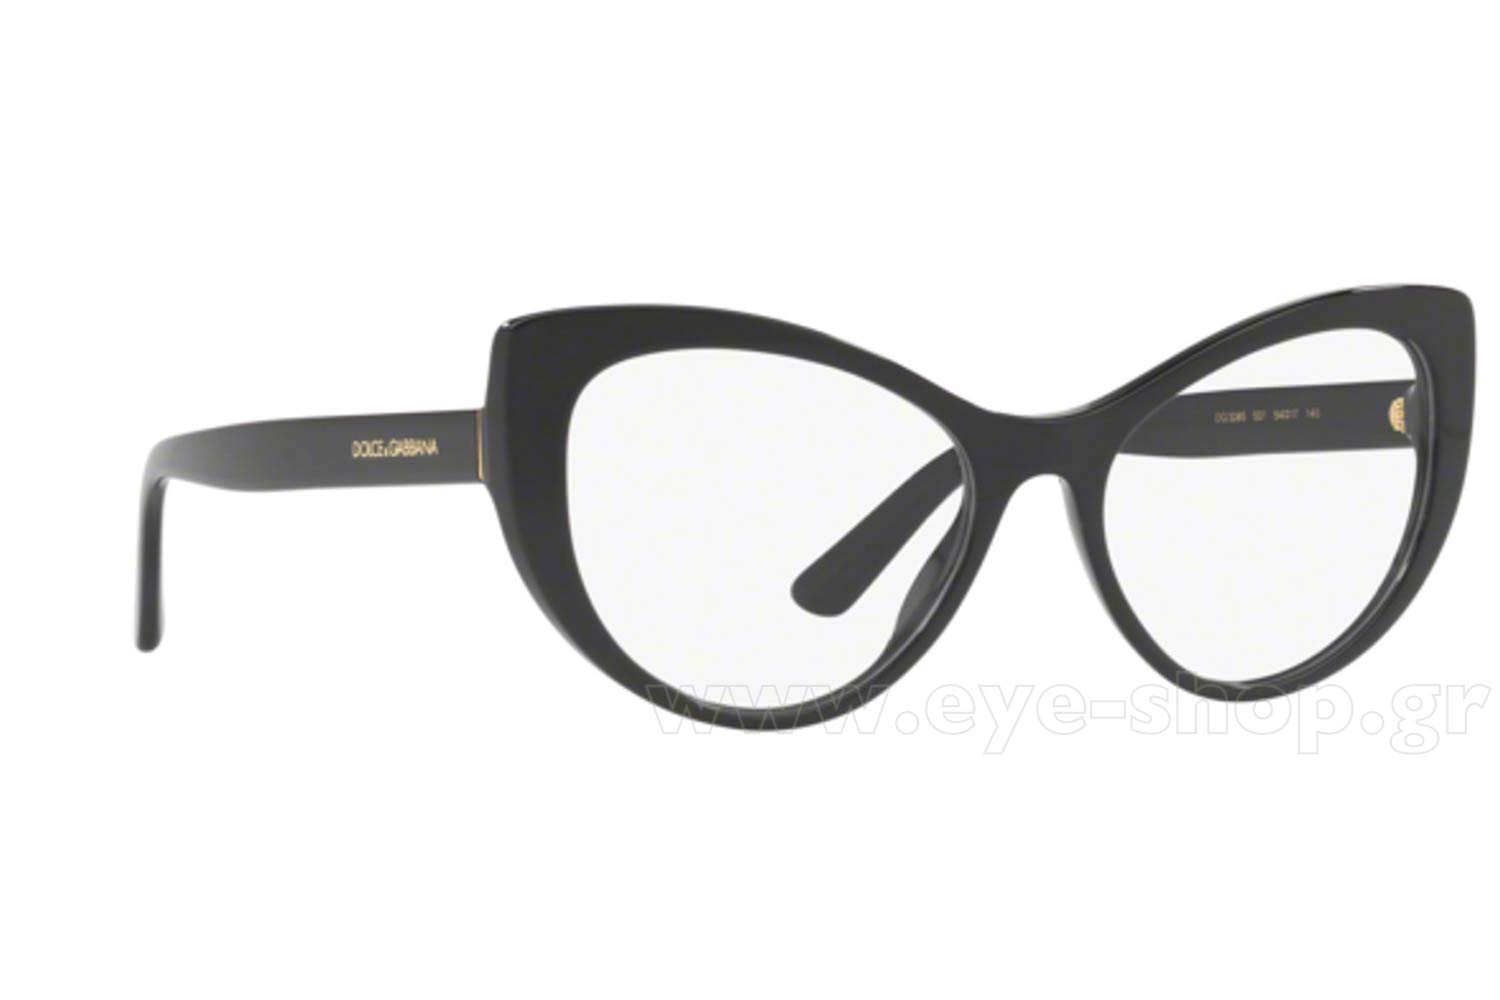 dolce gabbana eyewear frames 2018